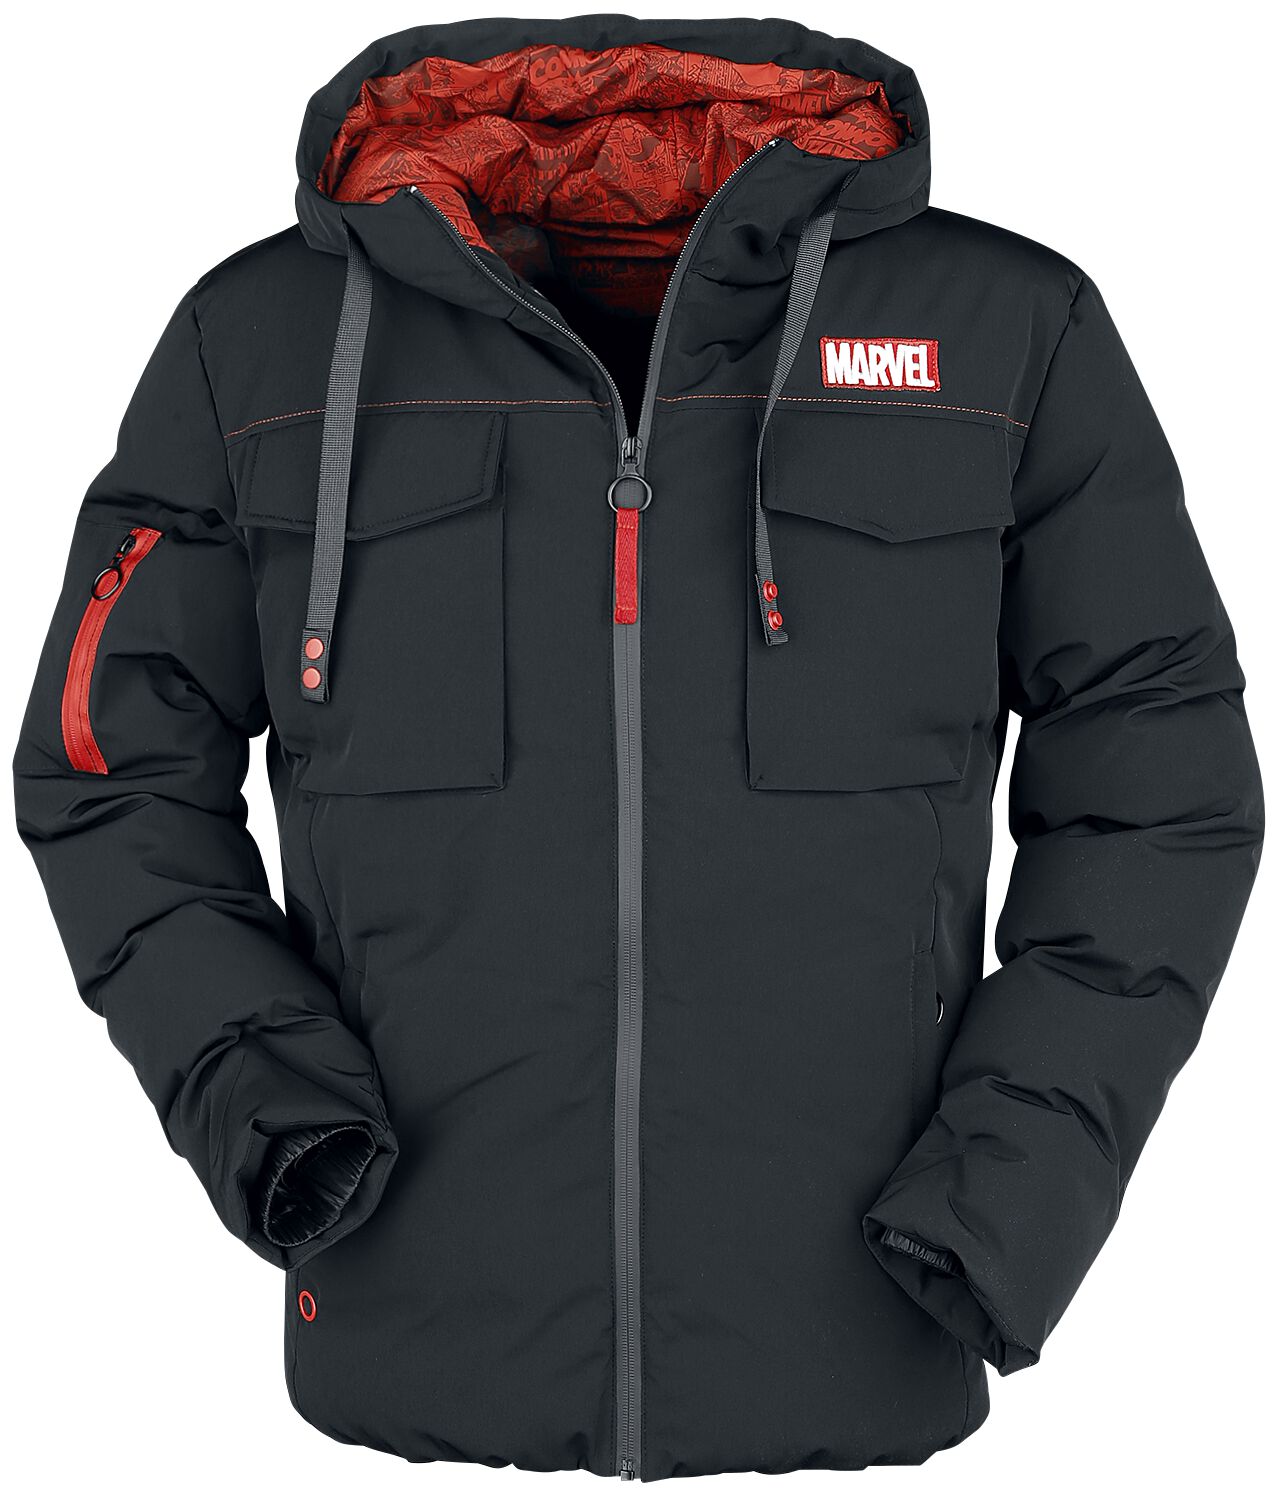 Marvel - Marvel Winterjacke - Marvel Logo - S bis XL - für Männer - Größe L - schwarz  - EMP exklusives Merchandise!